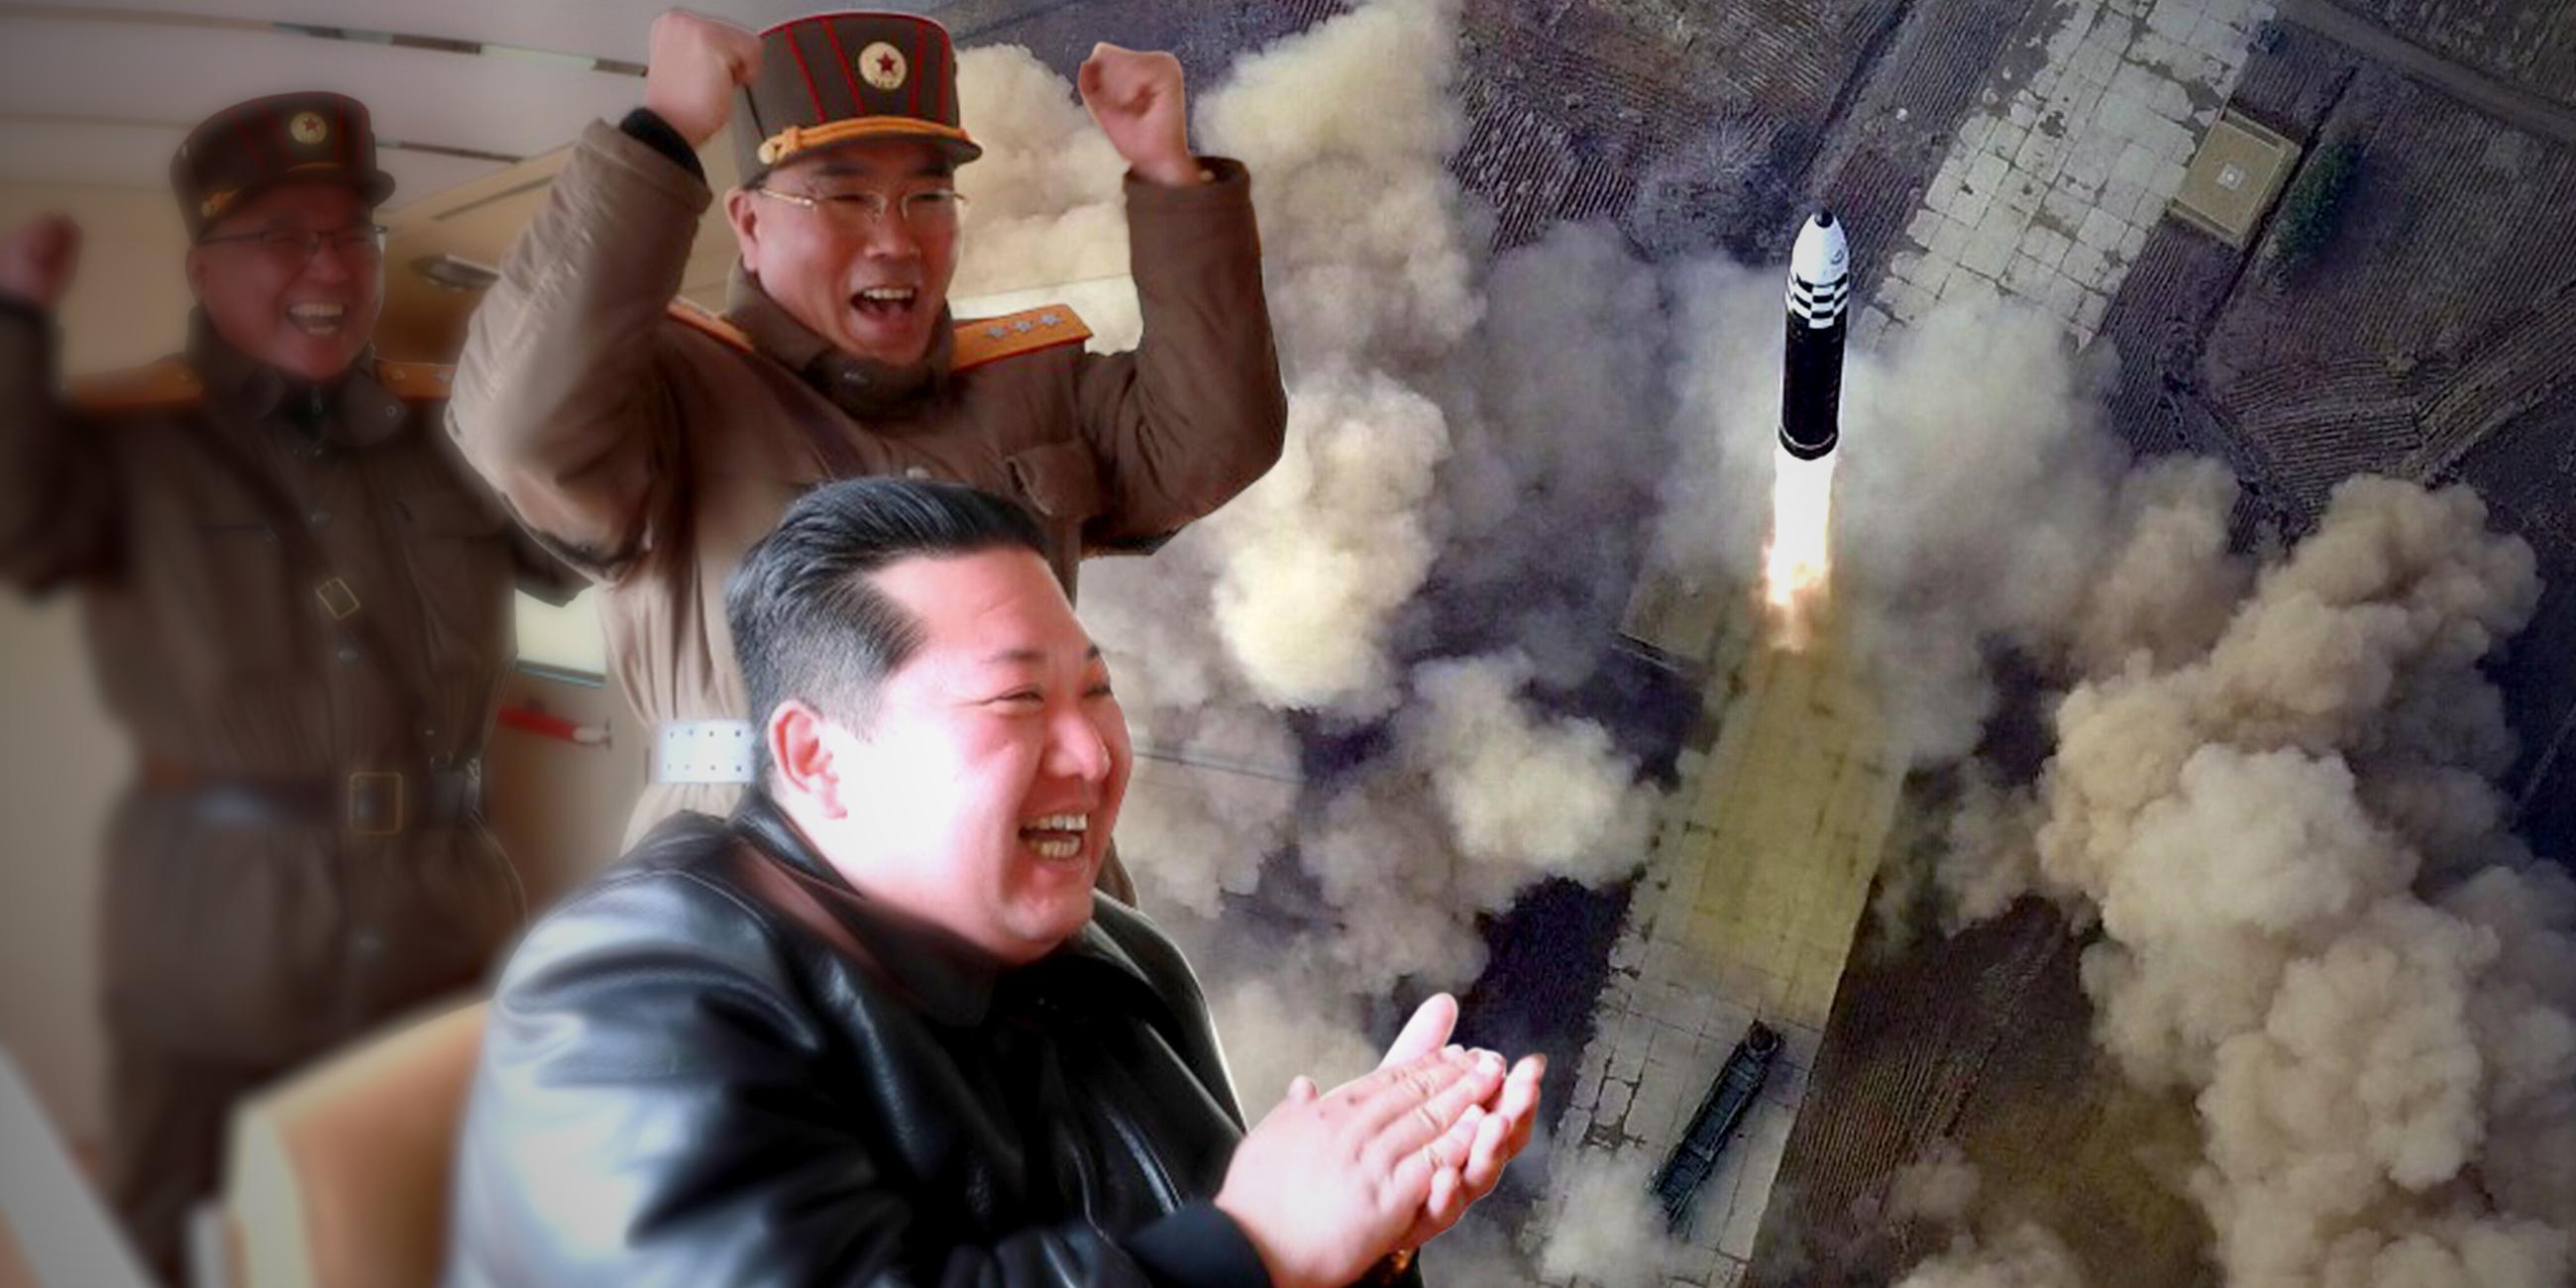 Montage: Links Kim Jong-un und zwei Offiziere, alle sind bester Laune, rechts das Bild einer startenden Rakete.